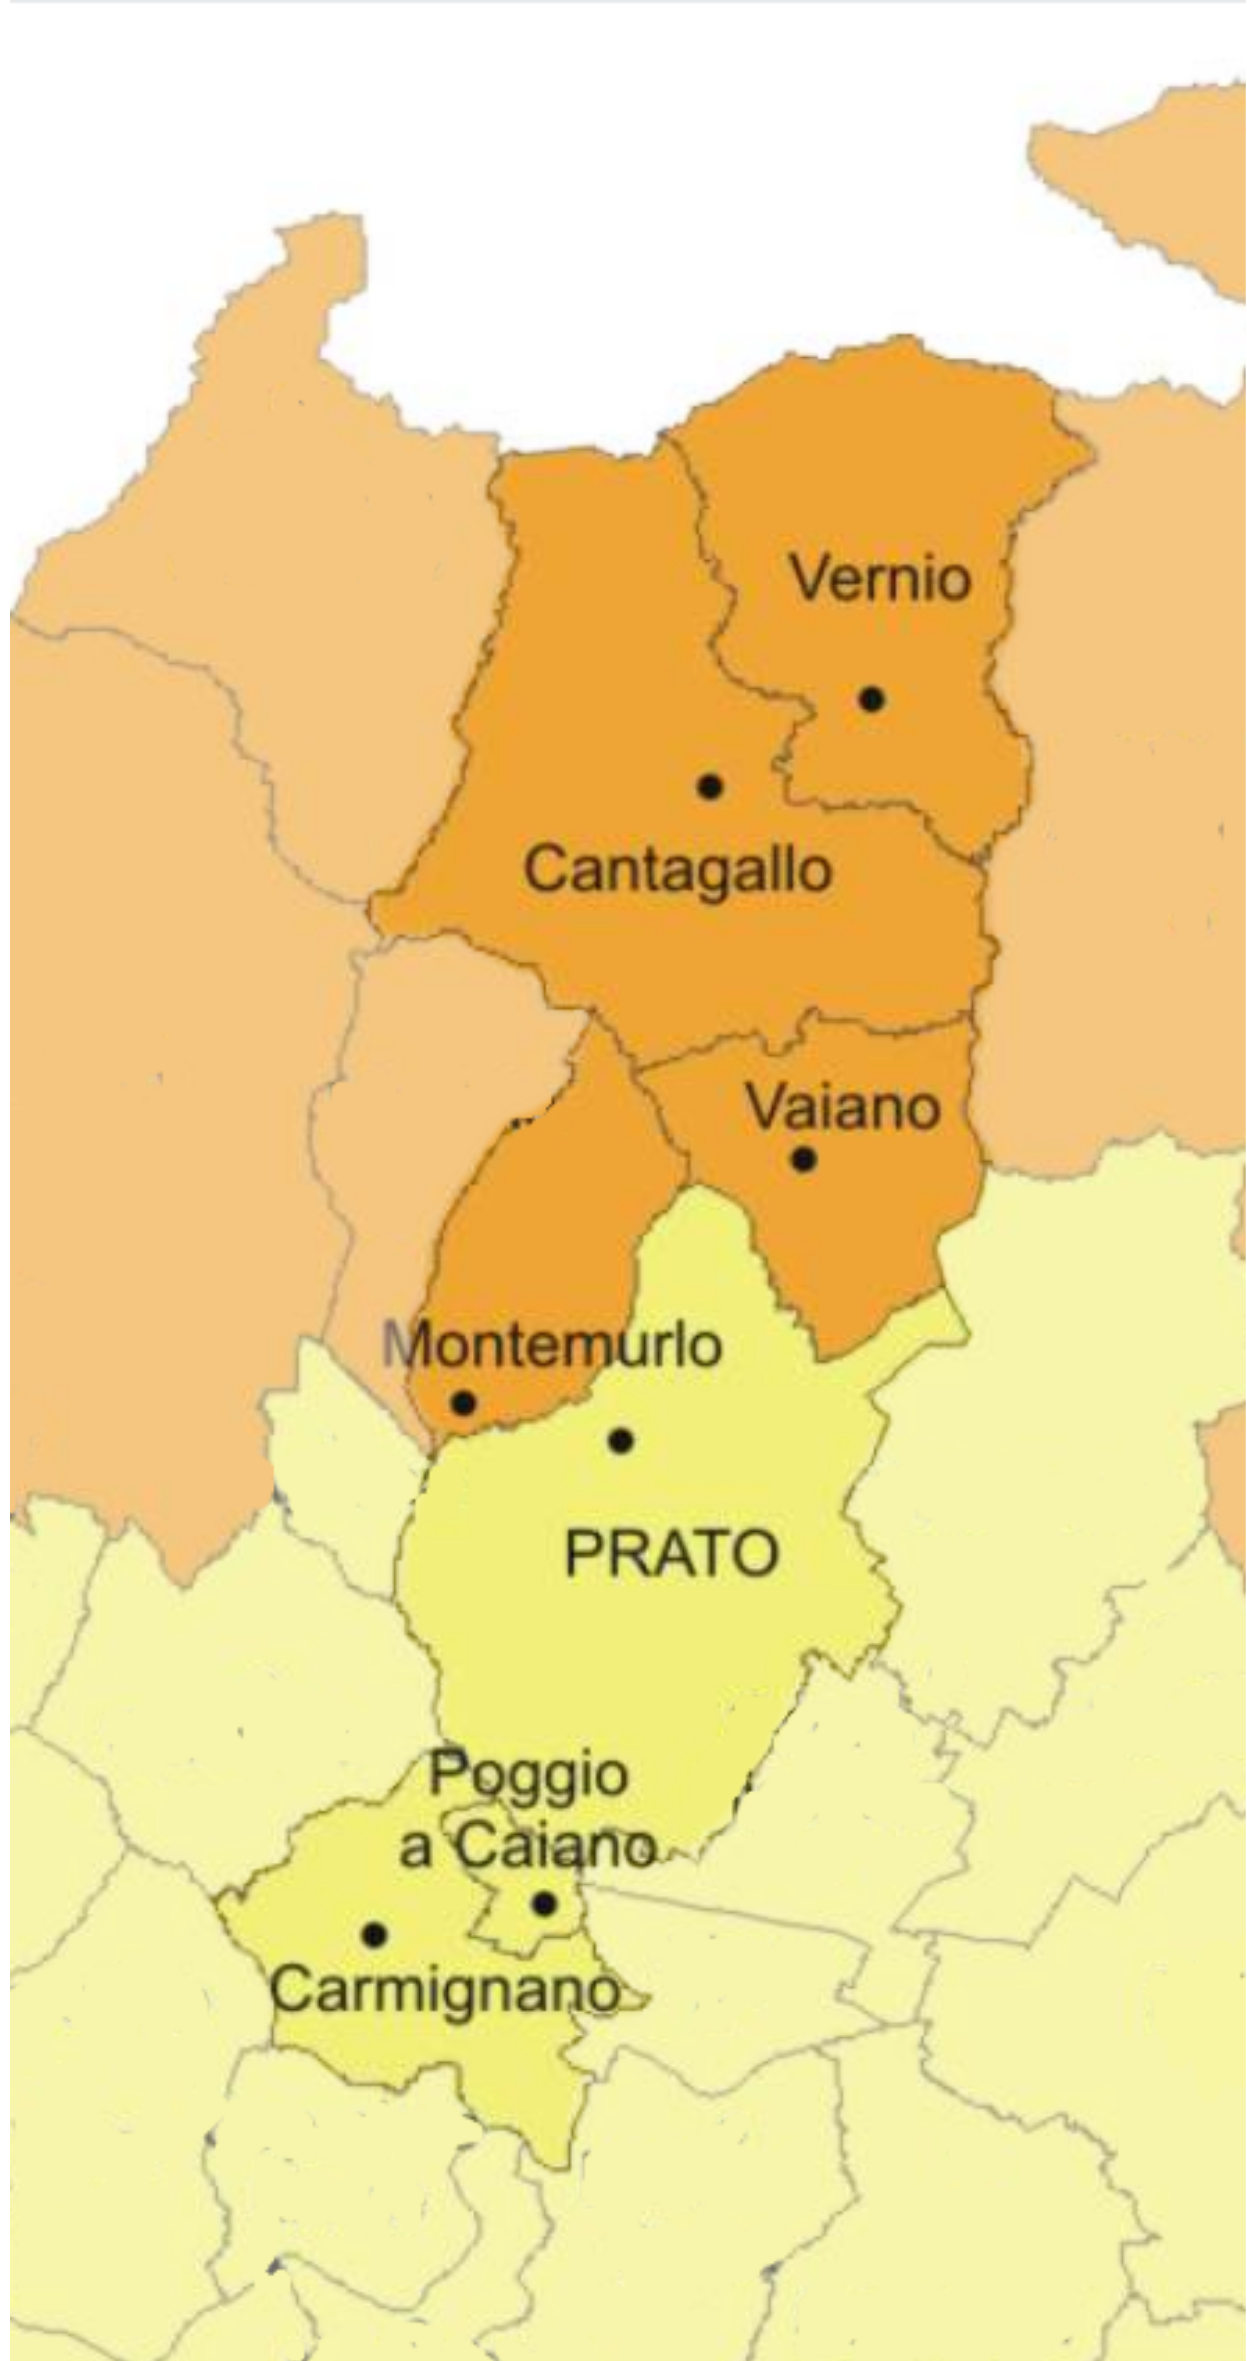 il rischio sismico a Prato